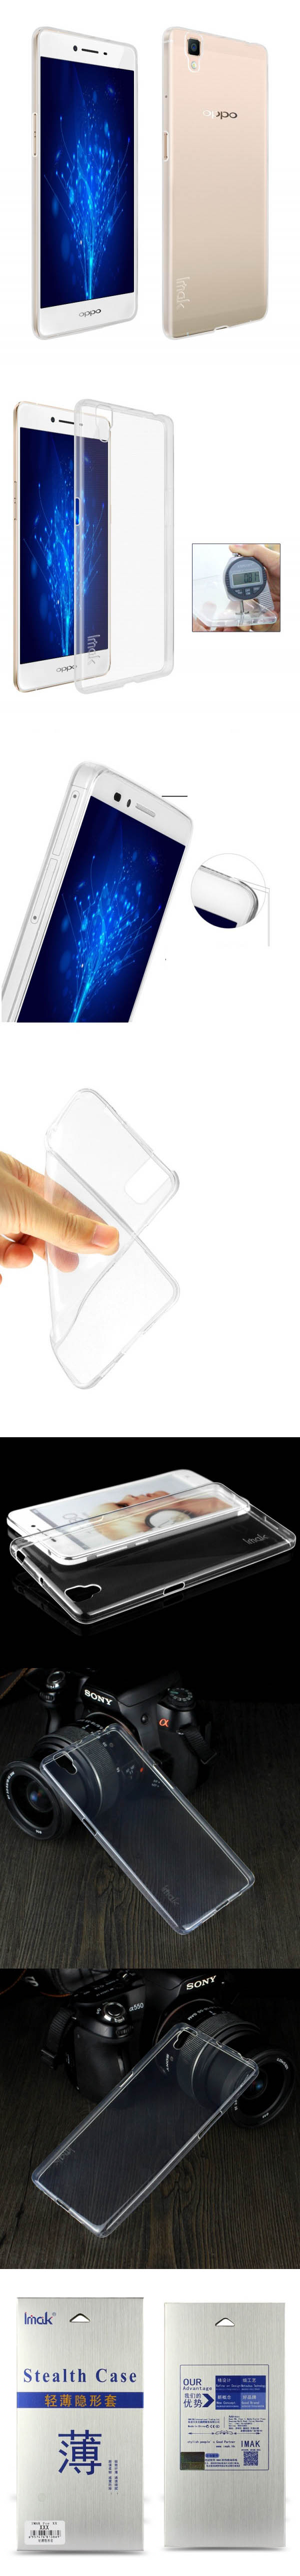 Ốp lưng Oppo R7S imak TPU nhựa dẻo trong suốt 3